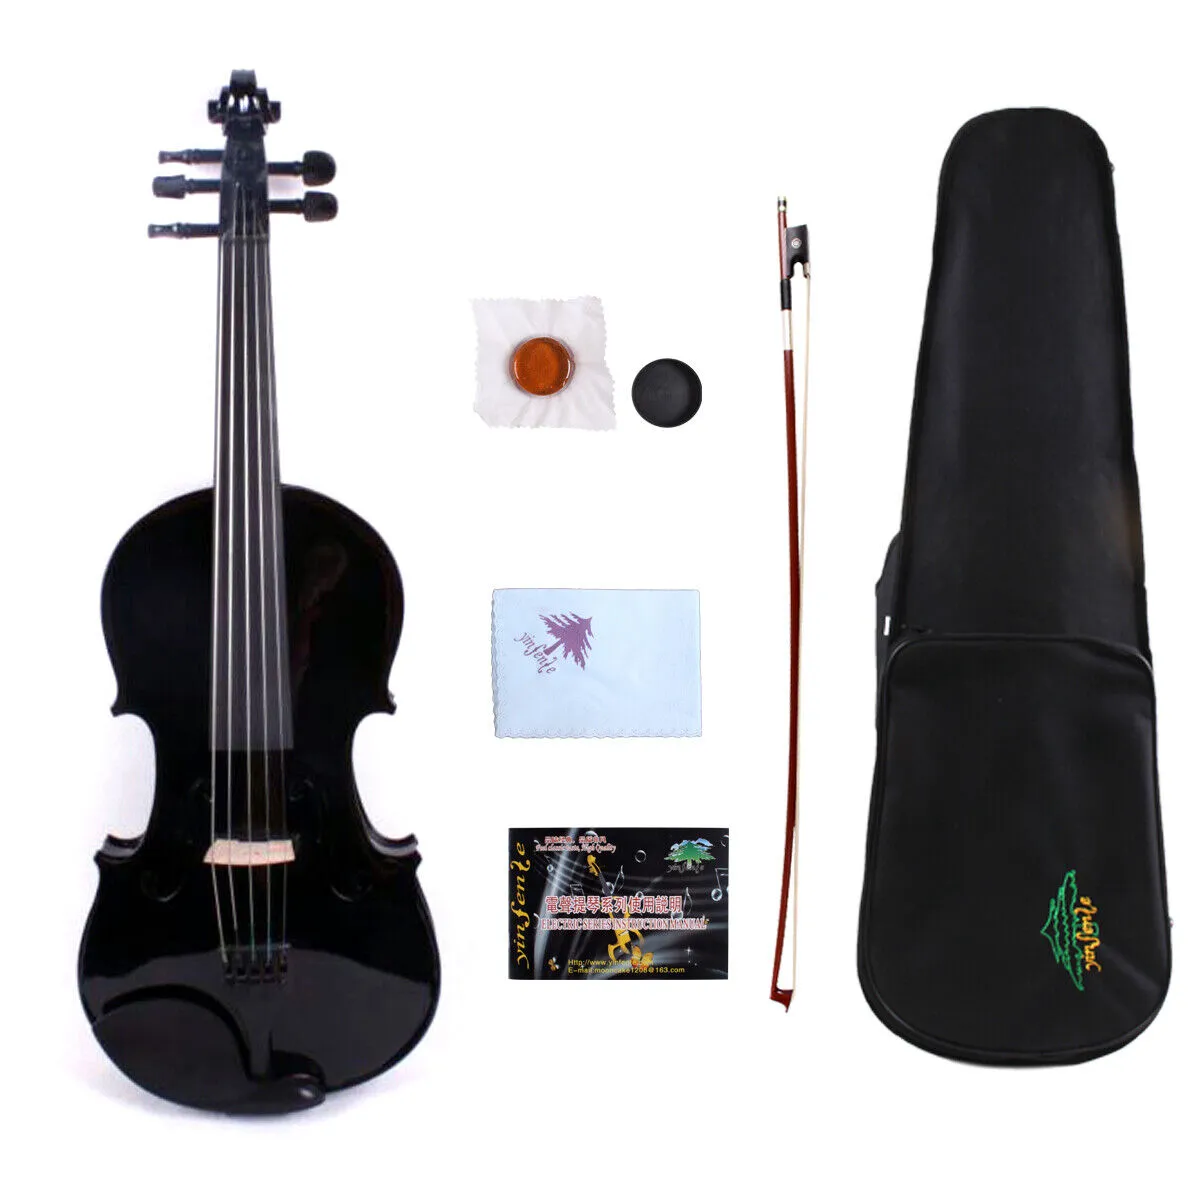 Yinfente 5string akustyczne skrzypce czarne 4/4 Maple+świerk wolny przypadek+łuk+kalafonia #VL1